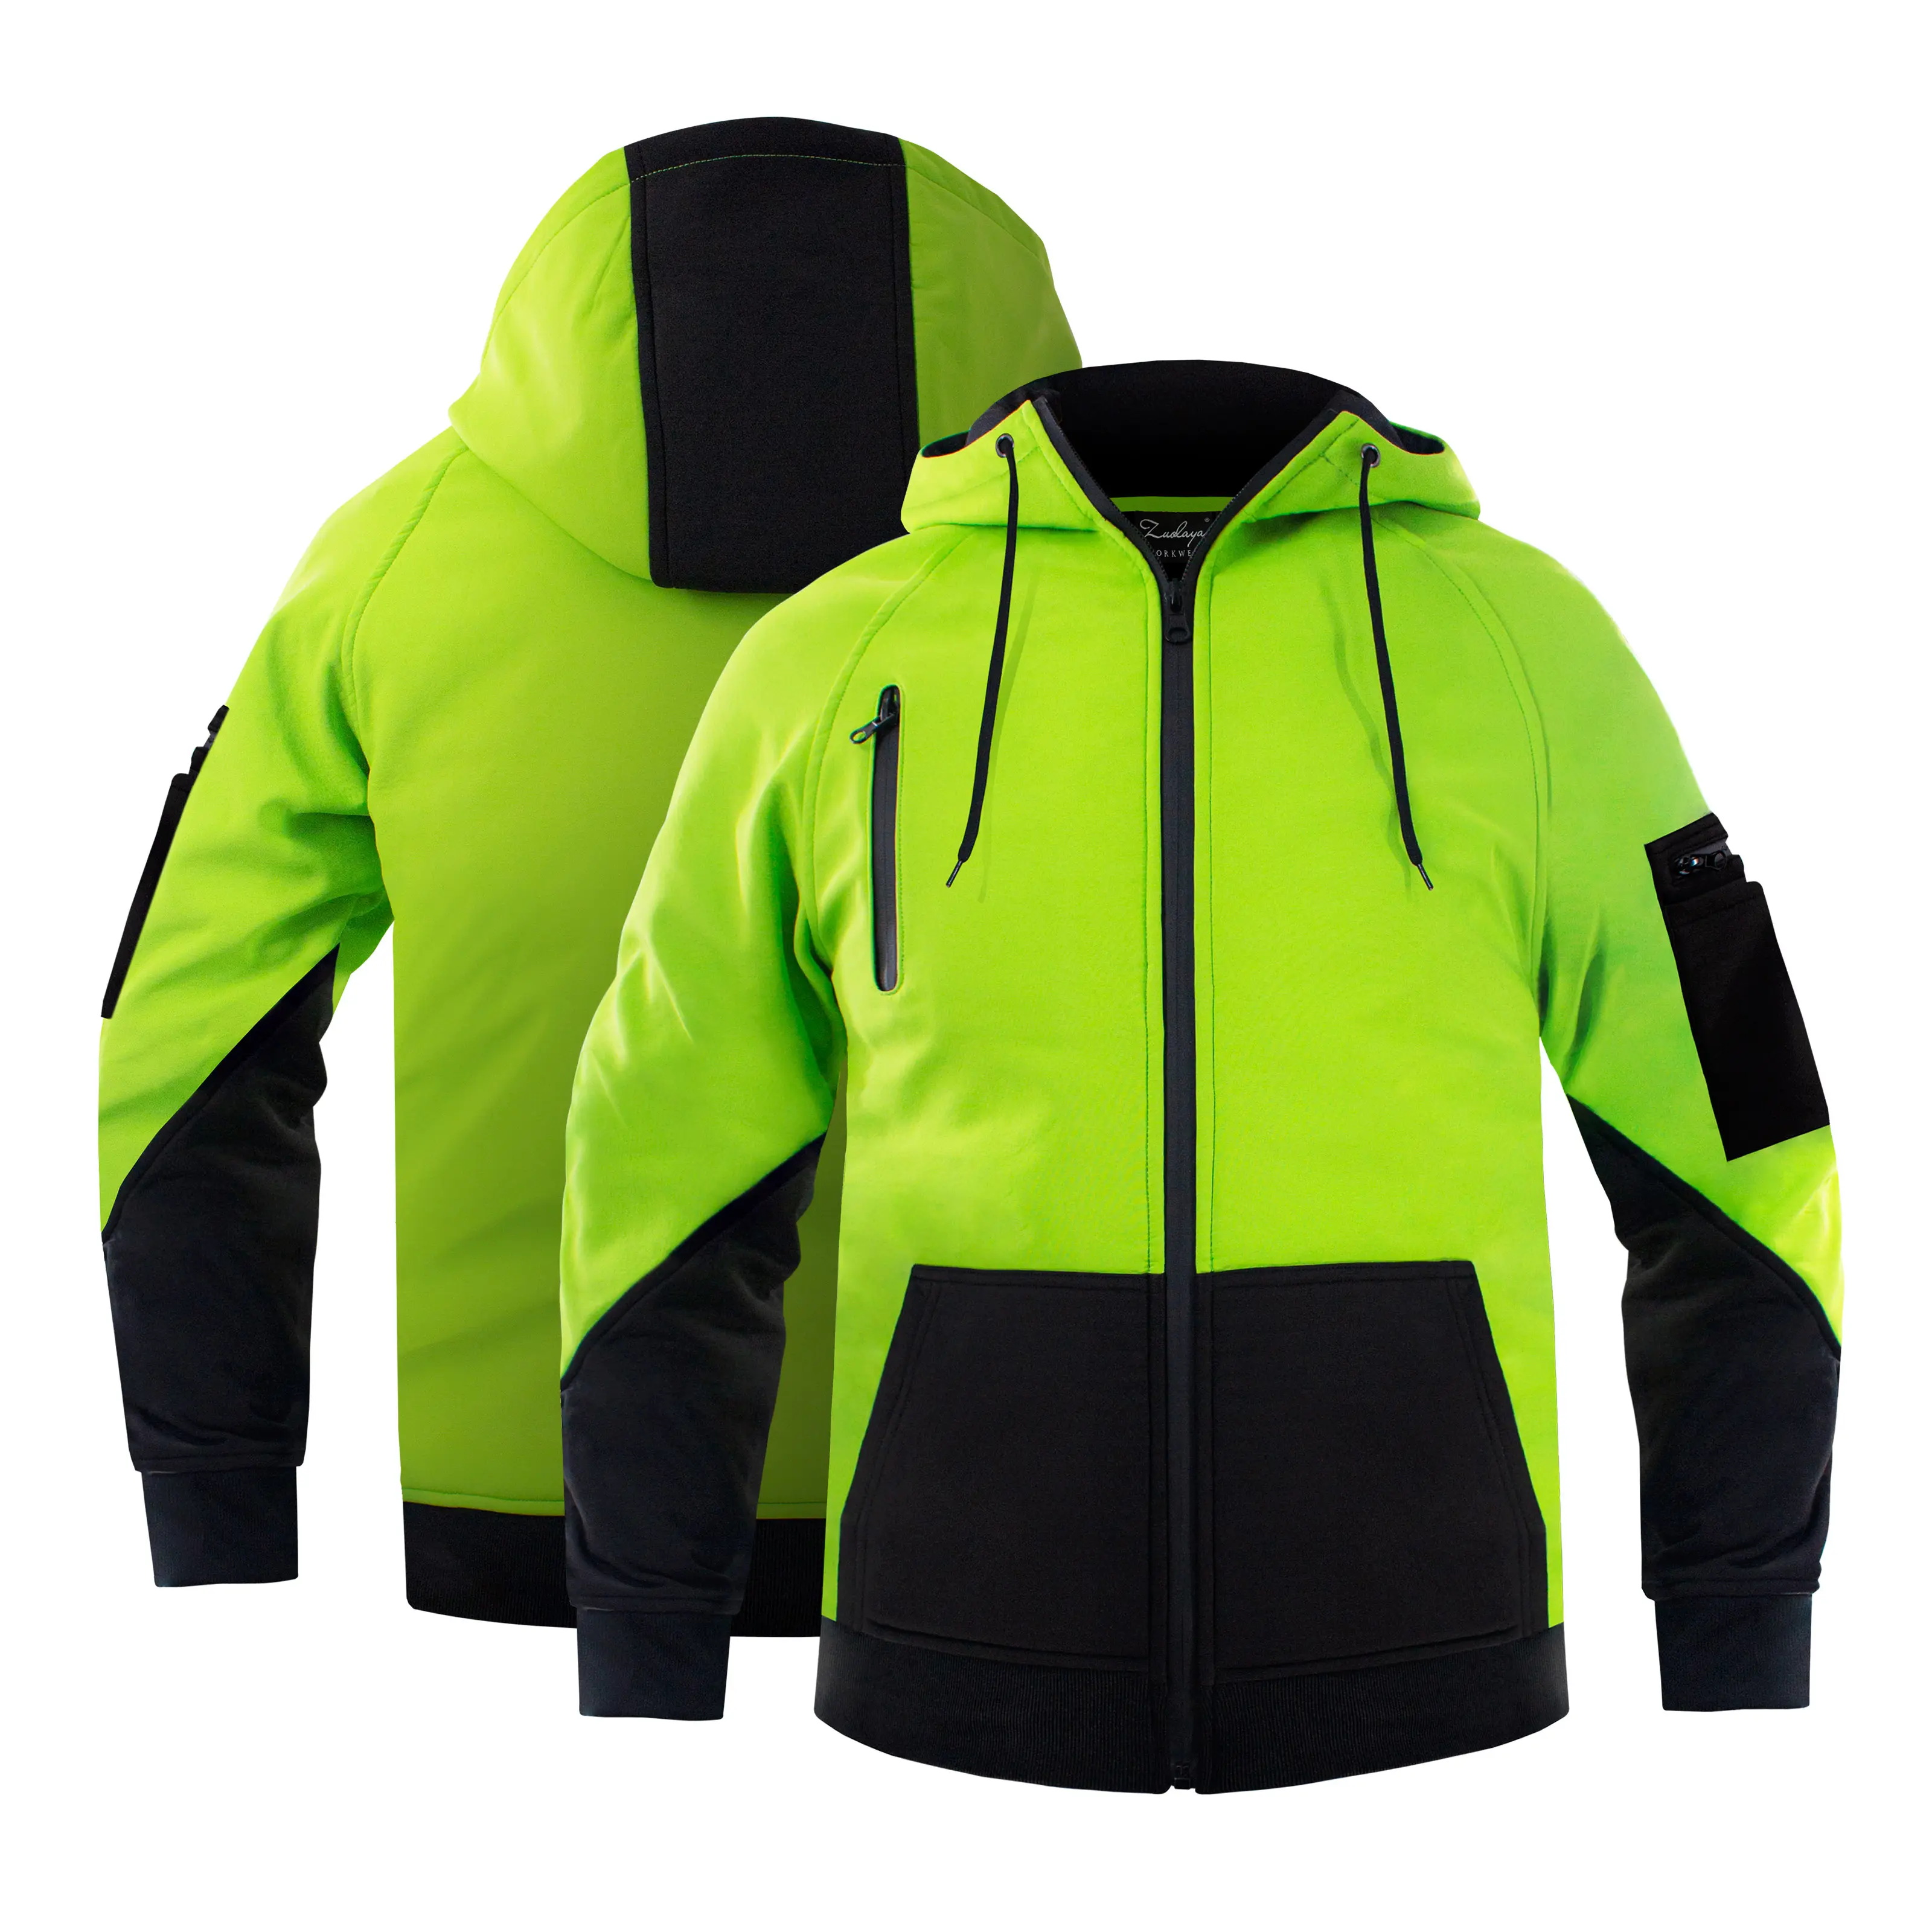 도매 높은 가시성 슈퍼 품질 작업 유니폼 하이비스 반사 안전 운동복 재킷 후드